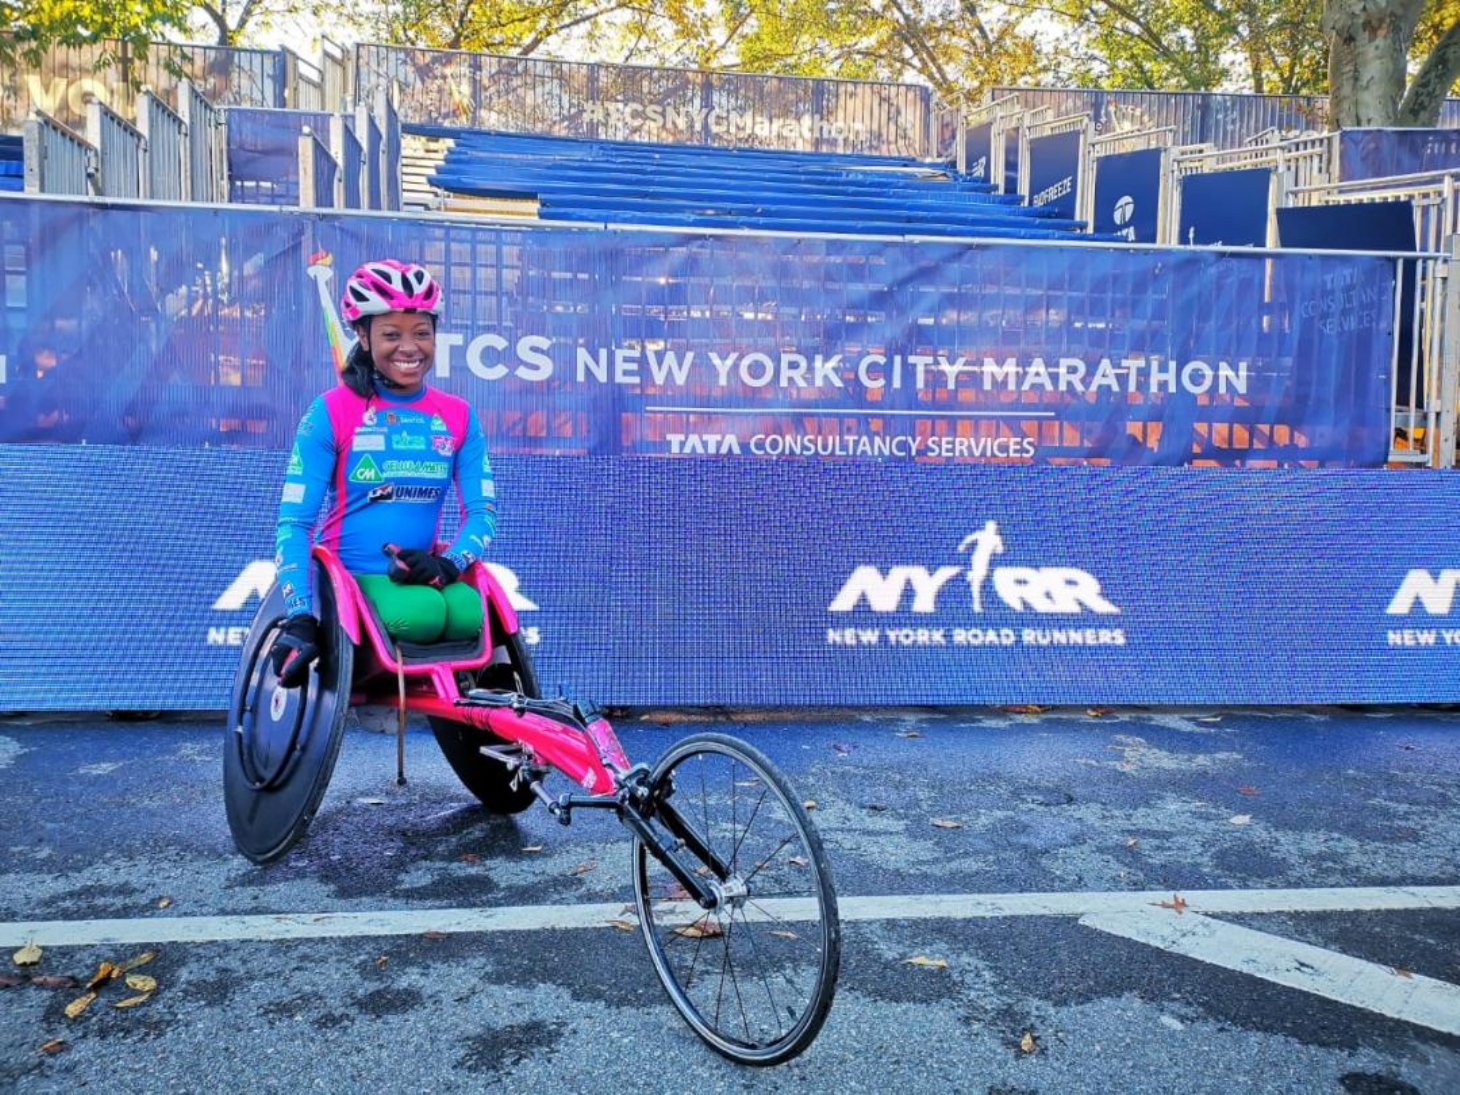 Com marca histórica, atleta santista fica em sexto lugar na Maratona de Nova York | Jornal da Orla